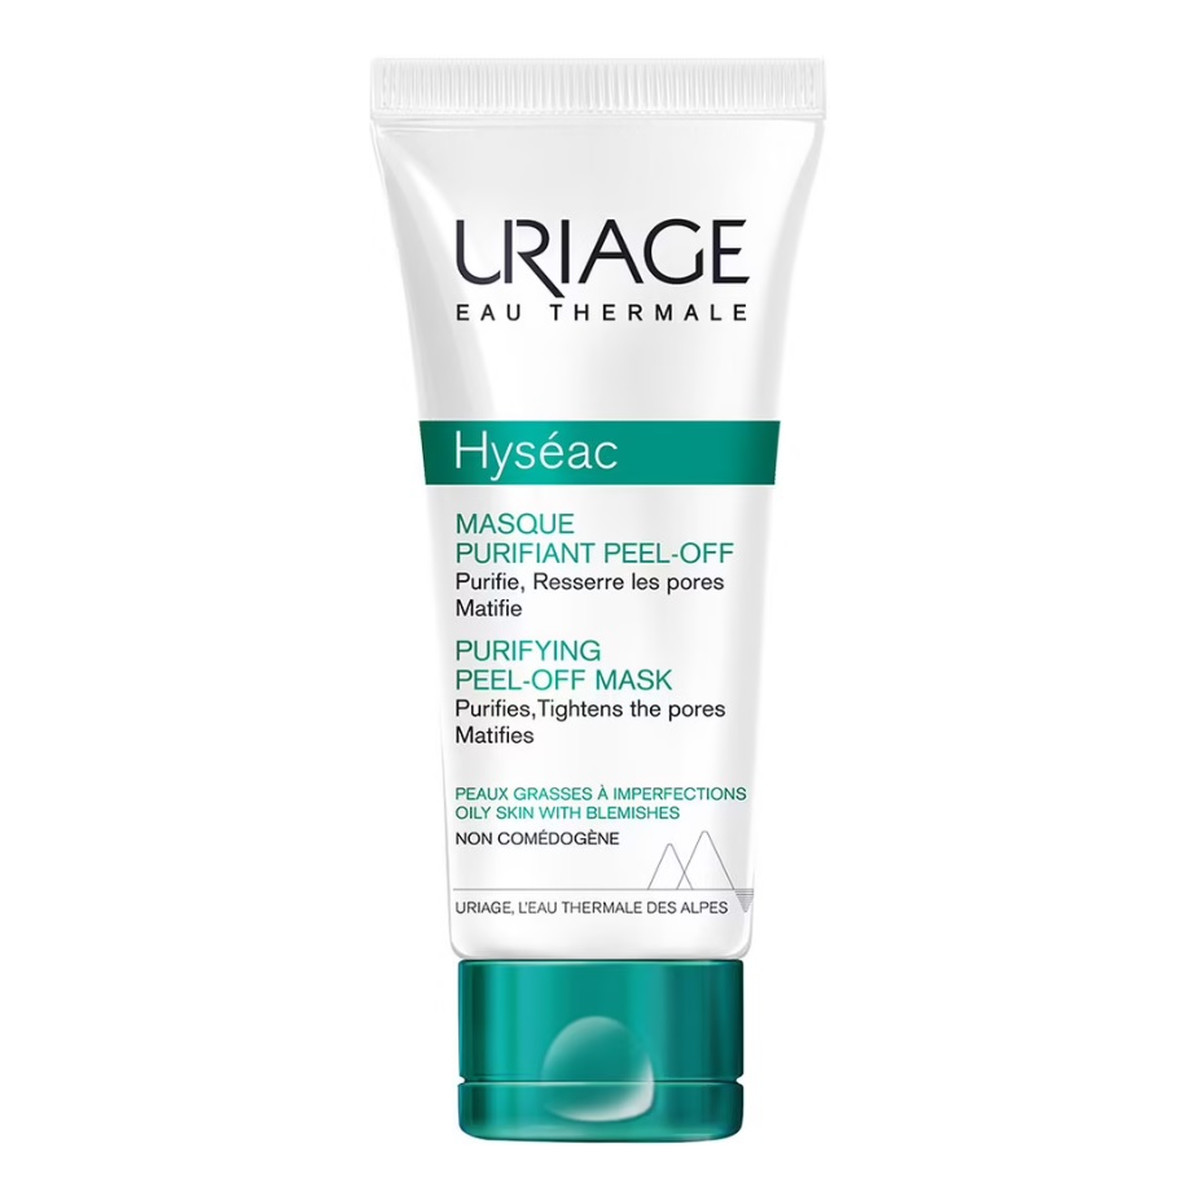 Uriage Hyseac purifying peel-of mask oczyszczająca maska do twarzy 50ml